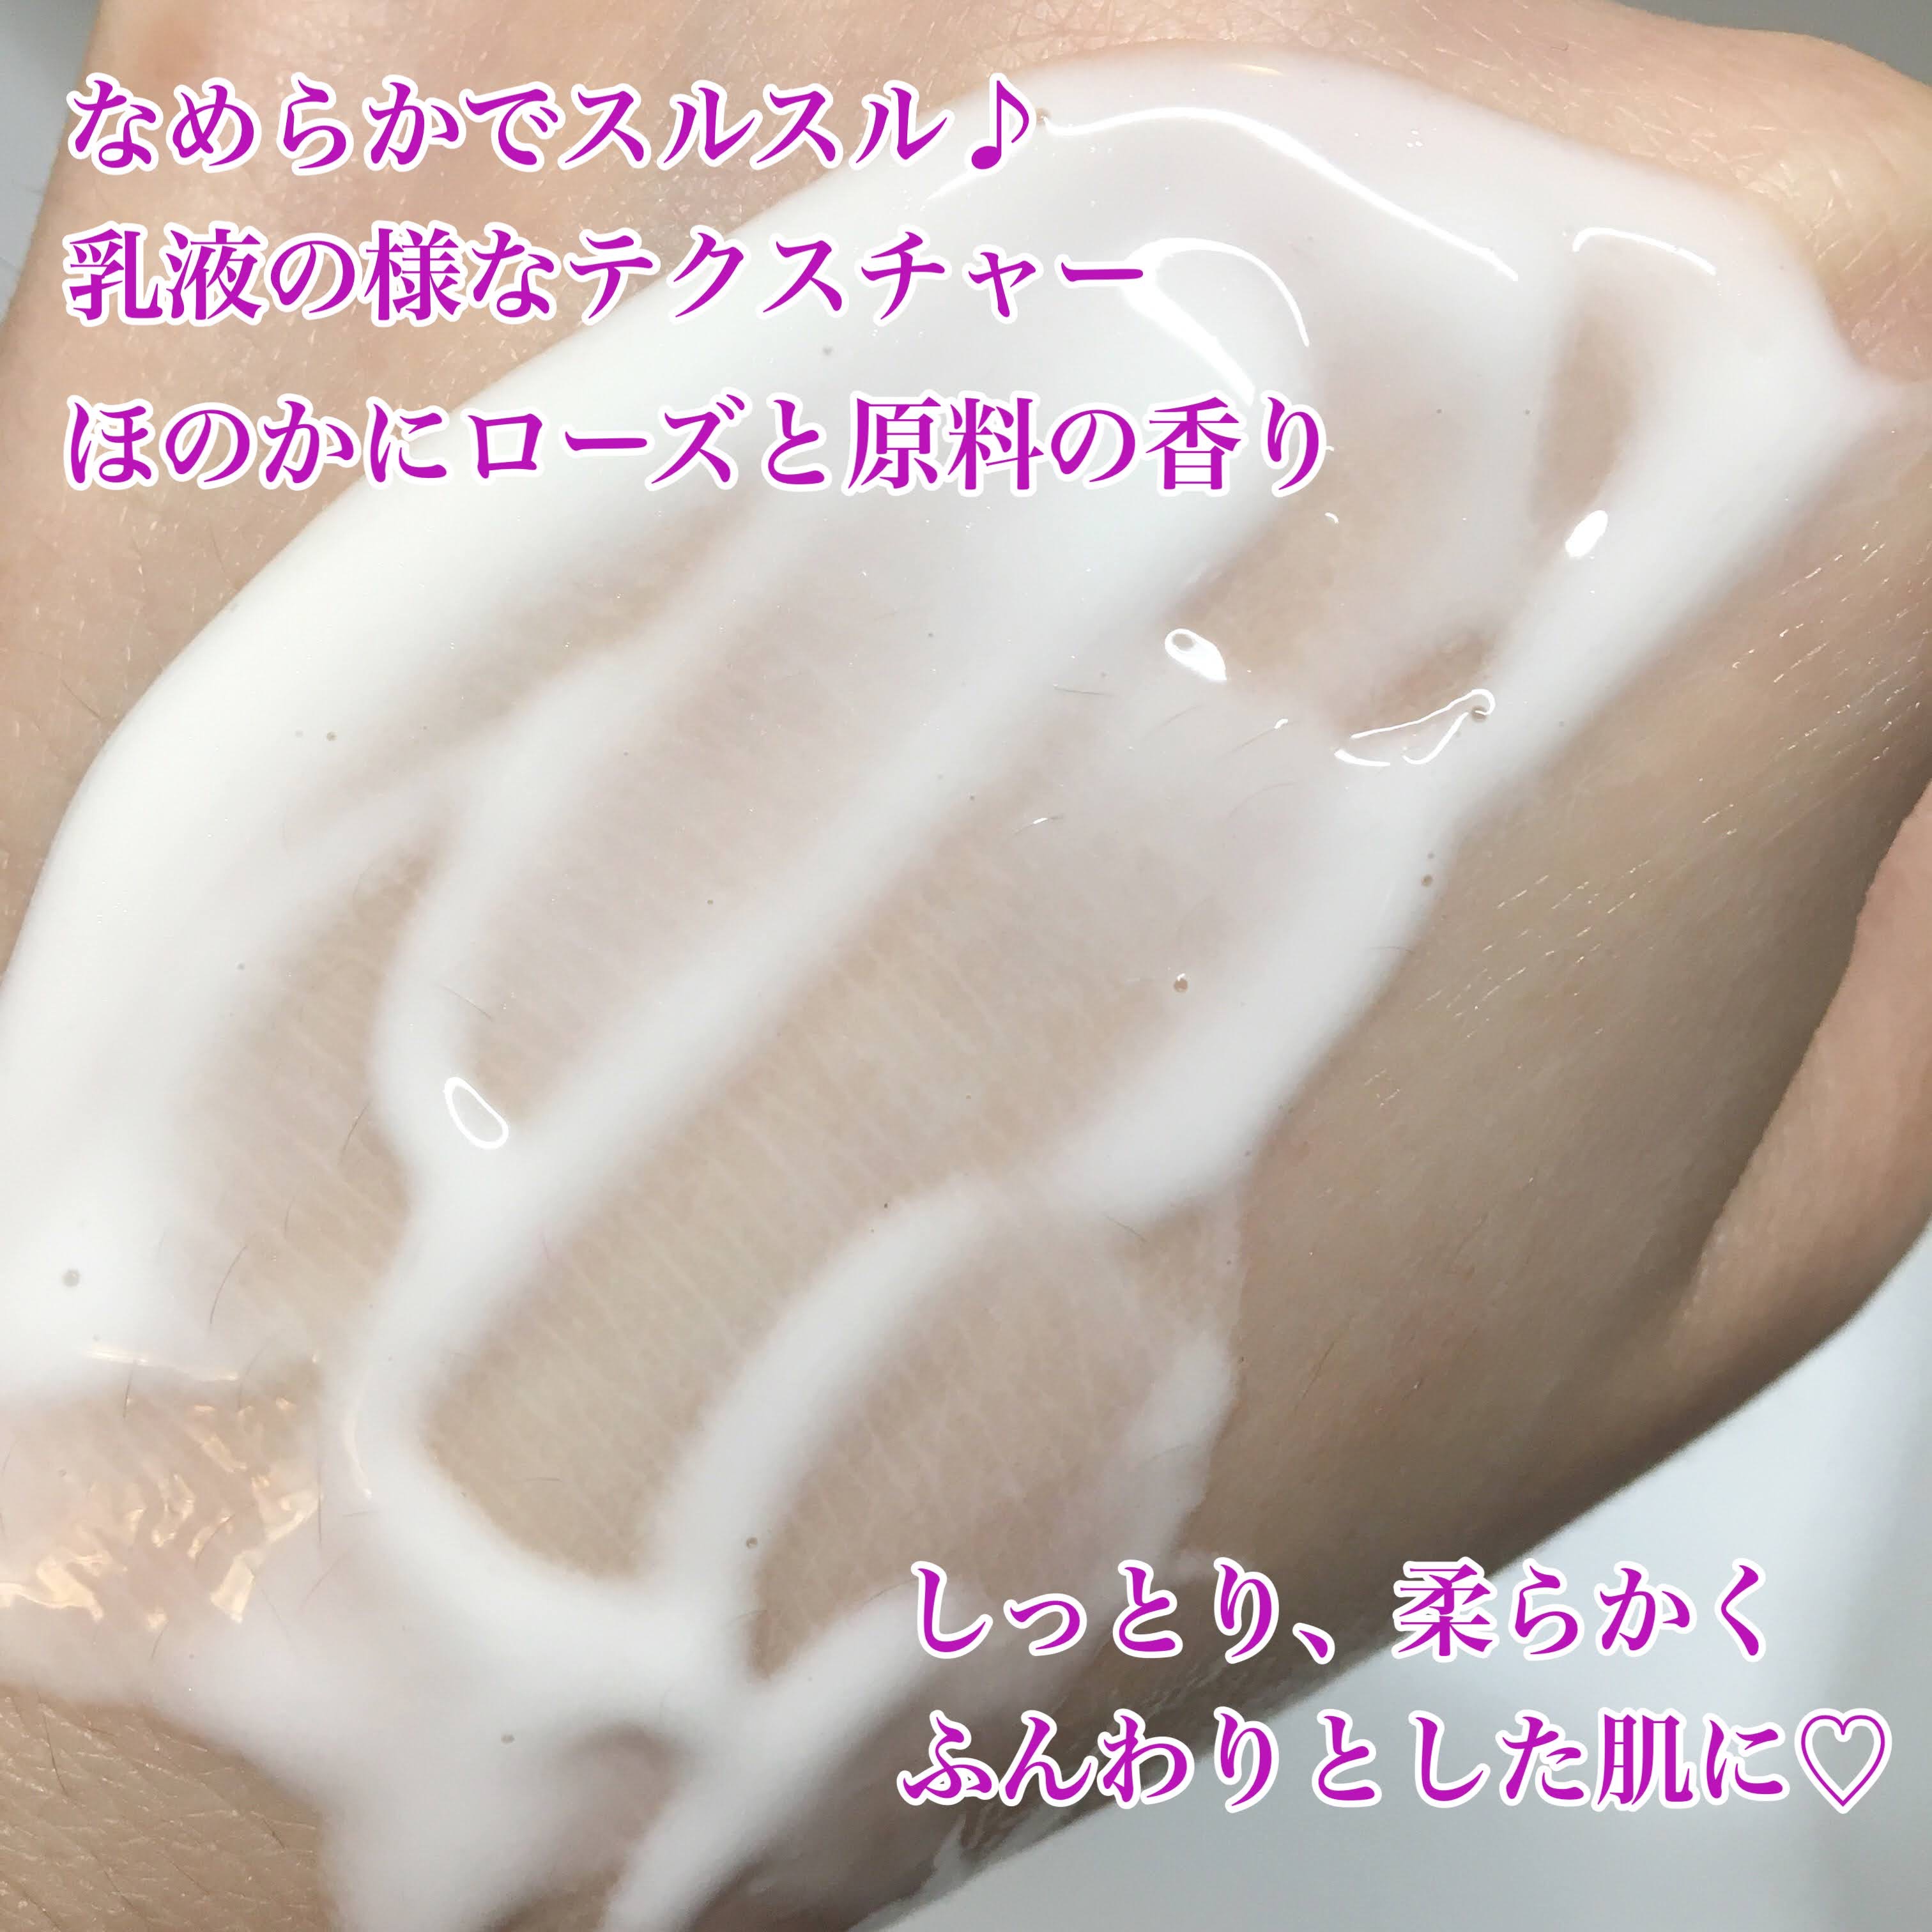 麗凍化粧品(Reitou Cosme) 美容液クリームを使ったぶるどっくさんのクチコミ画像6